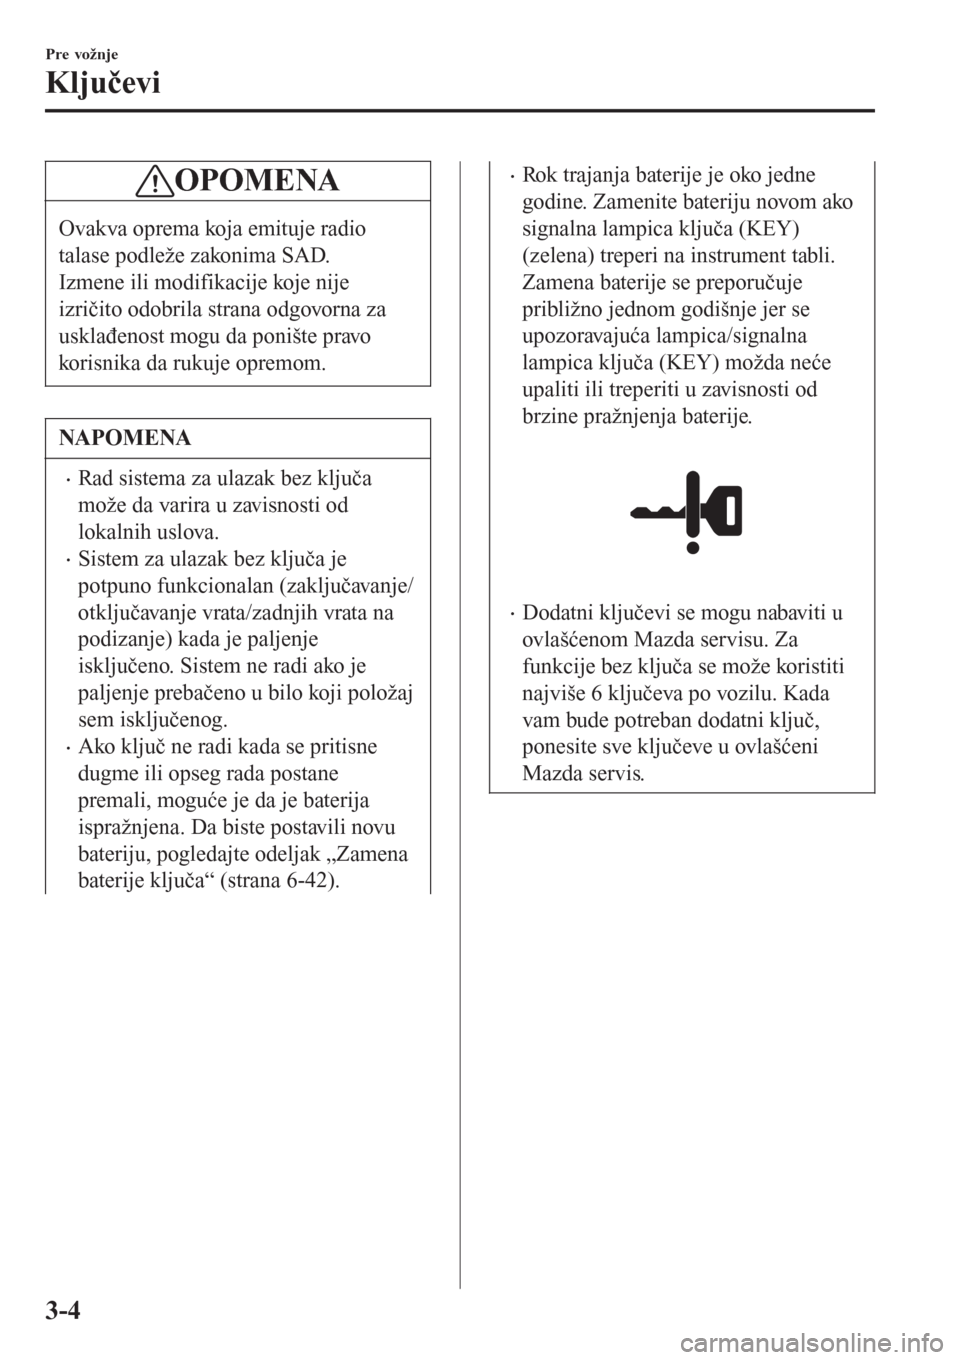 MAZDA MODEL CX-3 2016  Korisničko uputstvo (in Serbian) OPOMENA
Ovakva oprema koja emituje radio
talase podleže zakonima SAD.
Izmene ili modifikacije koje nije
izričito odobrila strana odgovorna za
usklađenost mogu da ponište pravo
korisnika da rukuje 